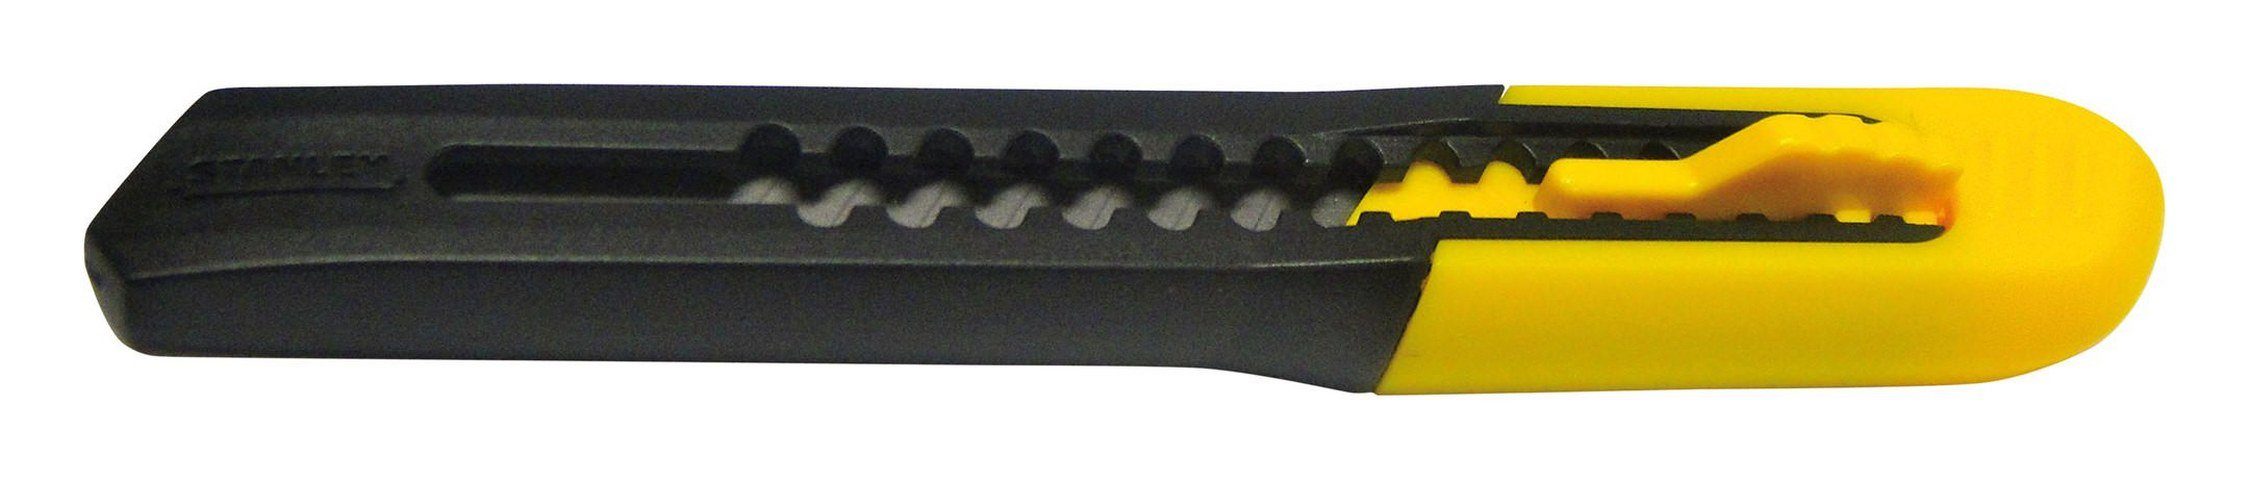 STANLEY Cuttermesser, Klinge: 0.9 cm, SM 130 mm Nr.0-10-150